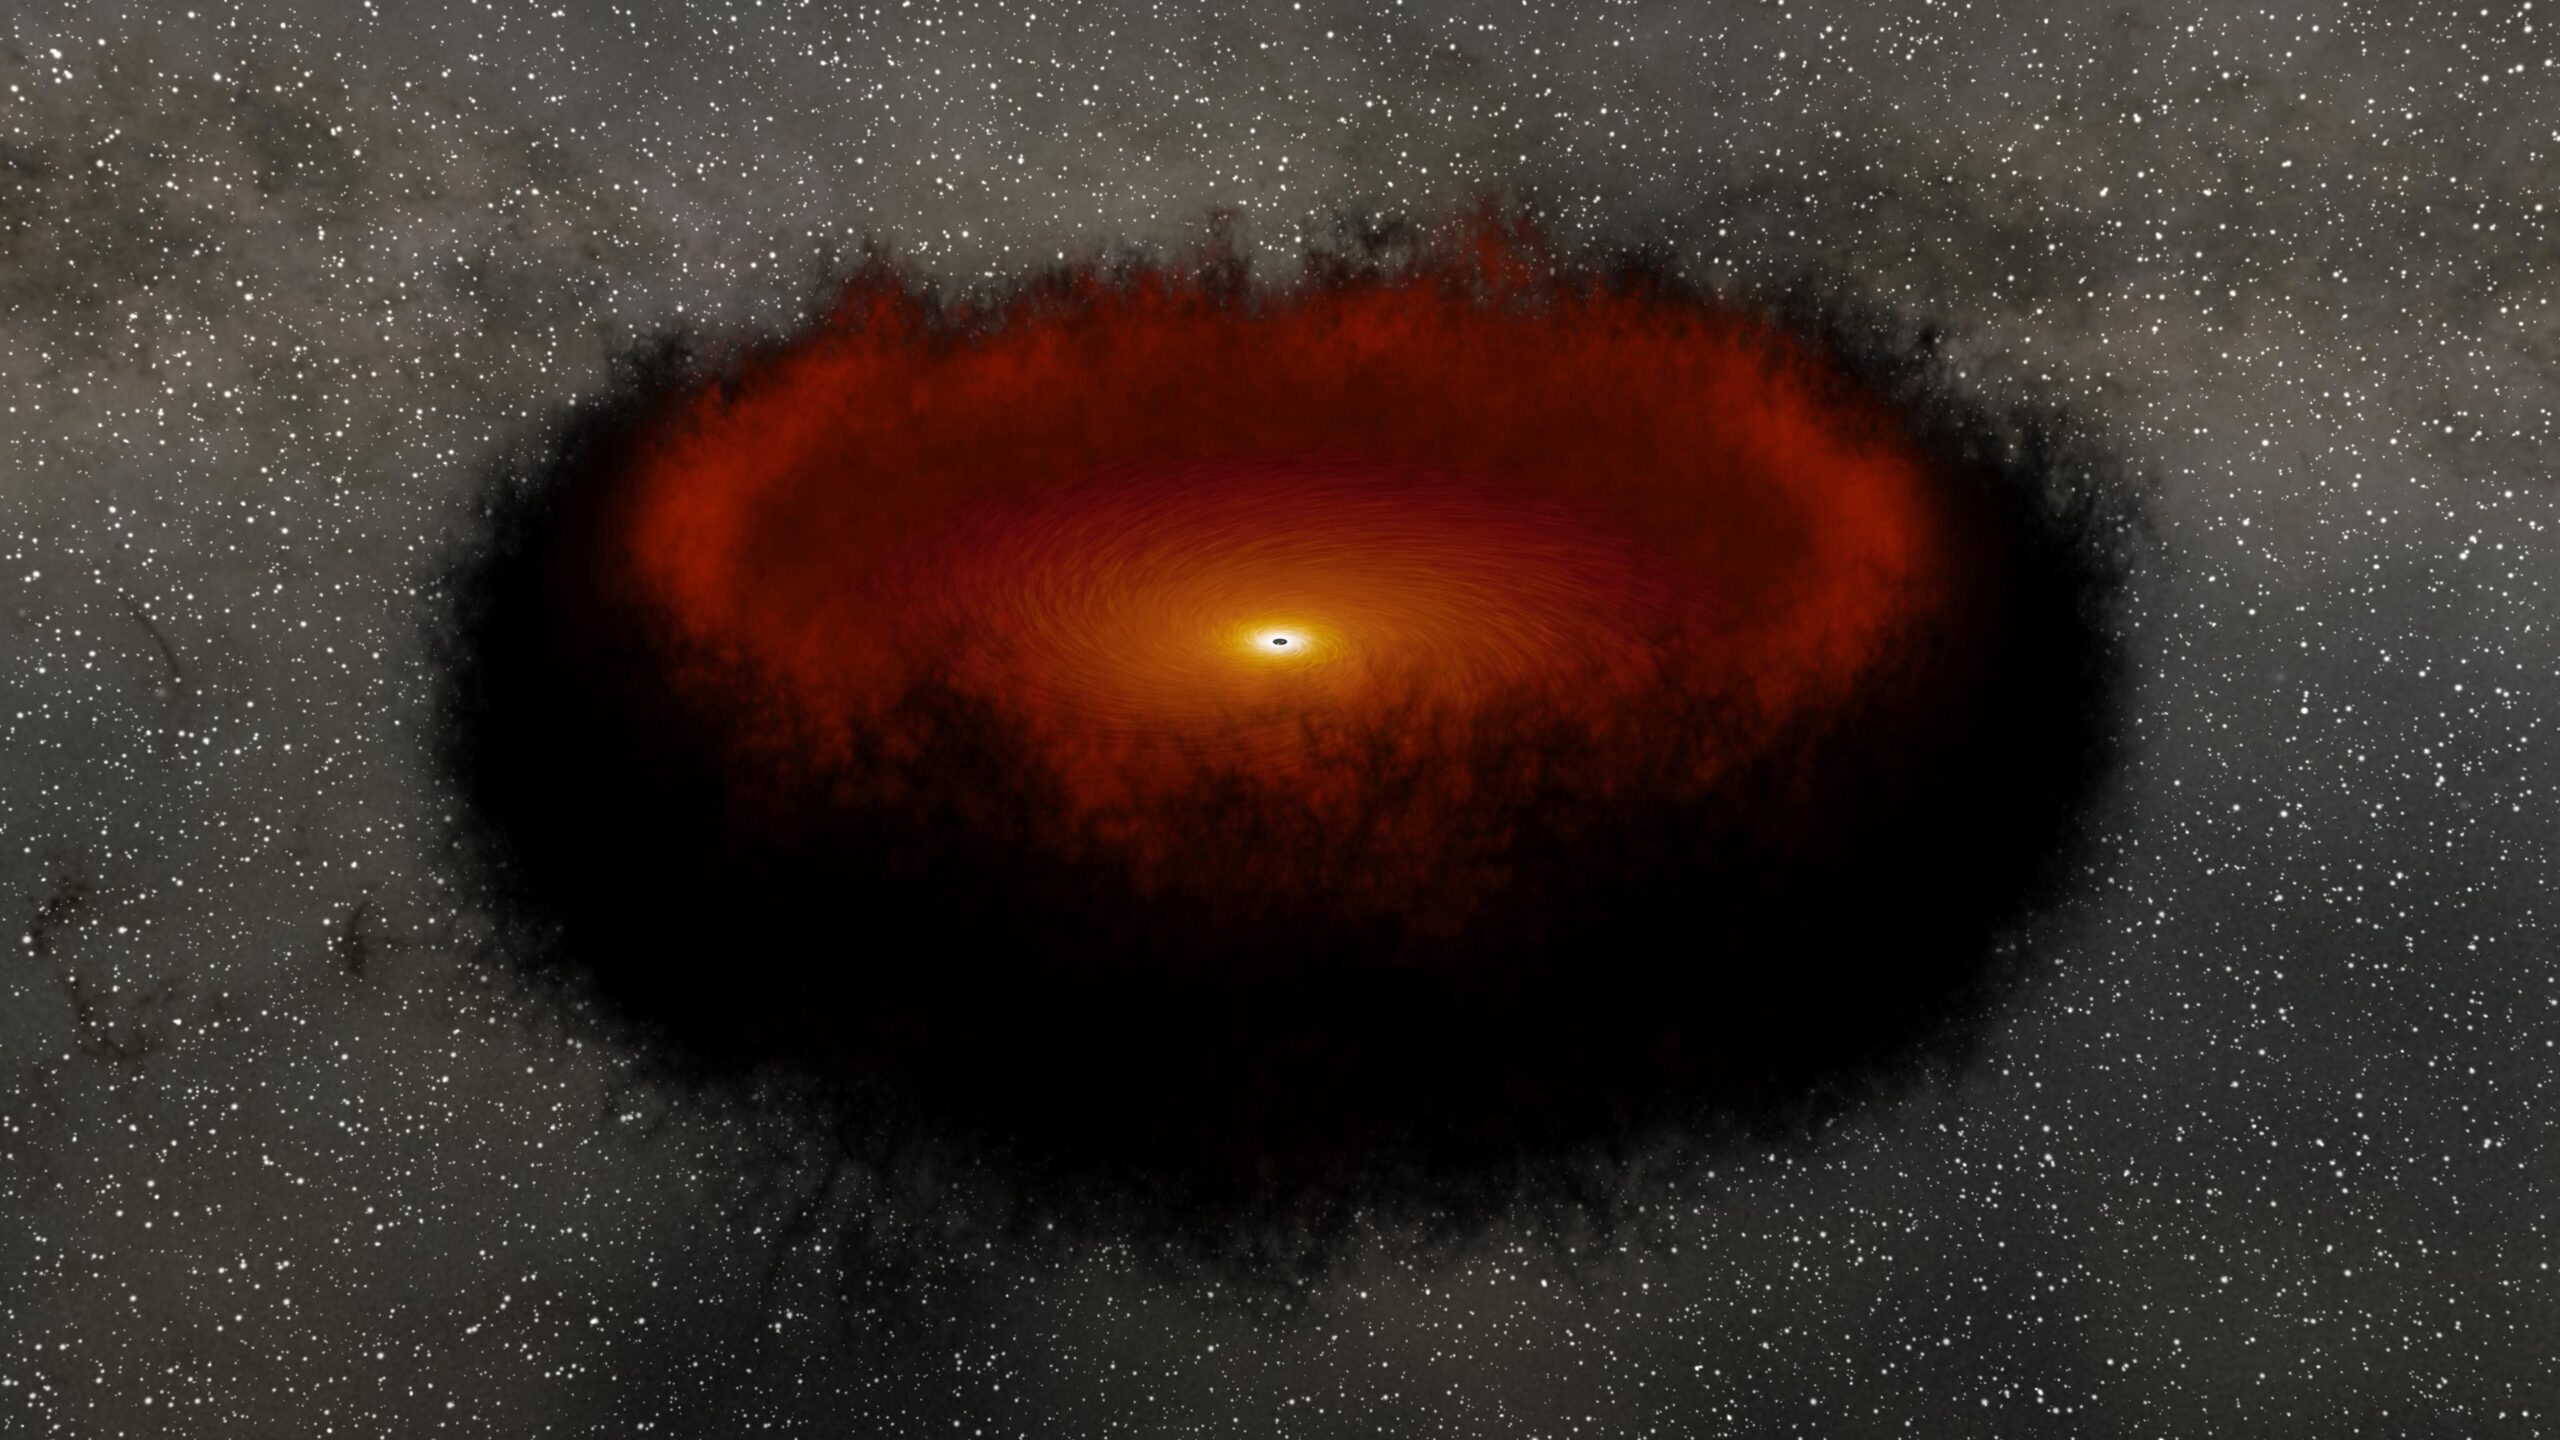 Descubren agujeros negros supermasivos en un lugar inusual del universo